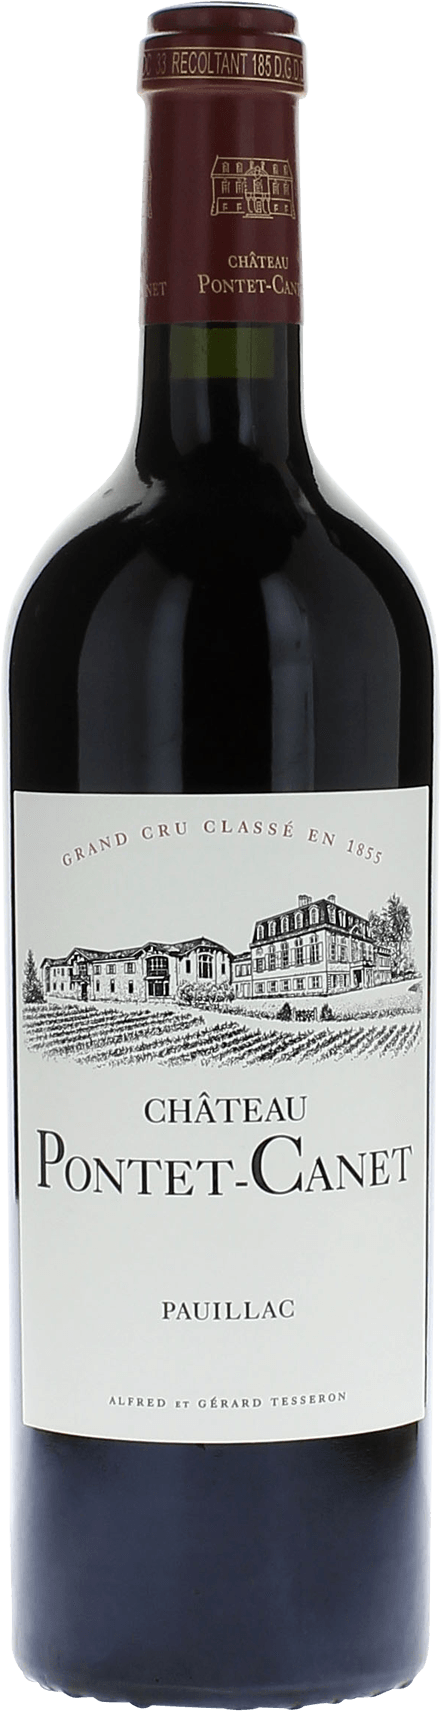 Pontet canet 1994 5me Grand cru class Pauillac, Bordeaux rouge